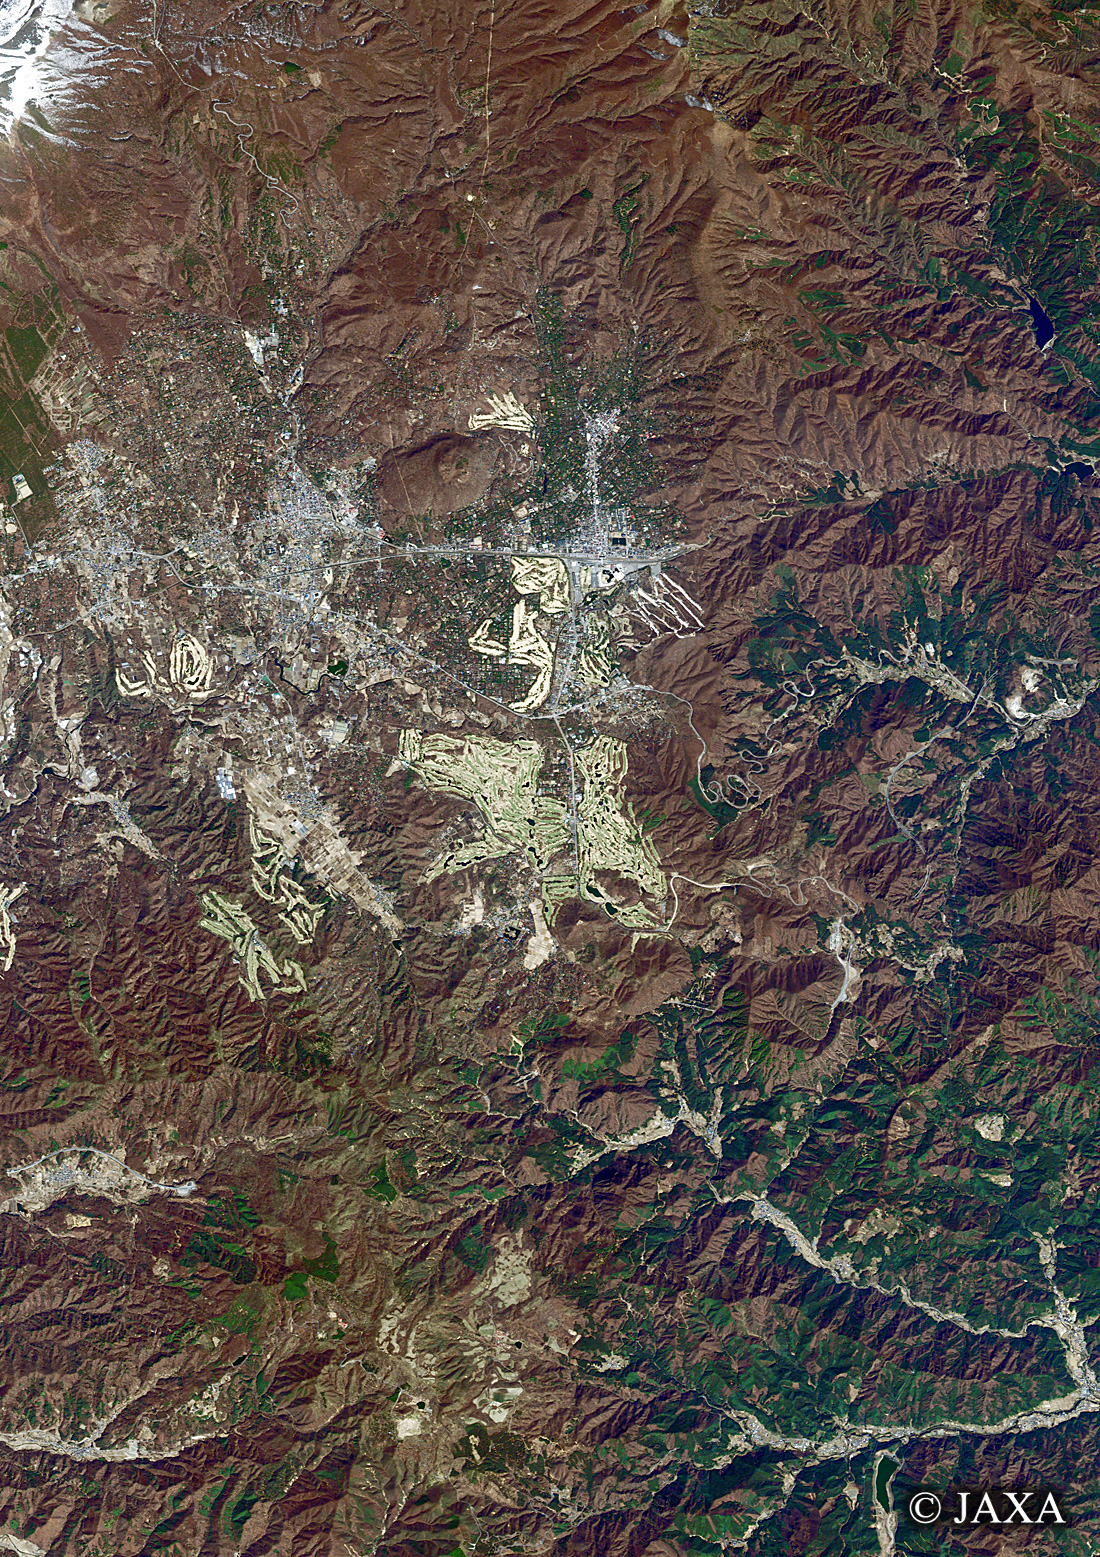 だいちから見た日本の都市 軽井沢:衛星画像